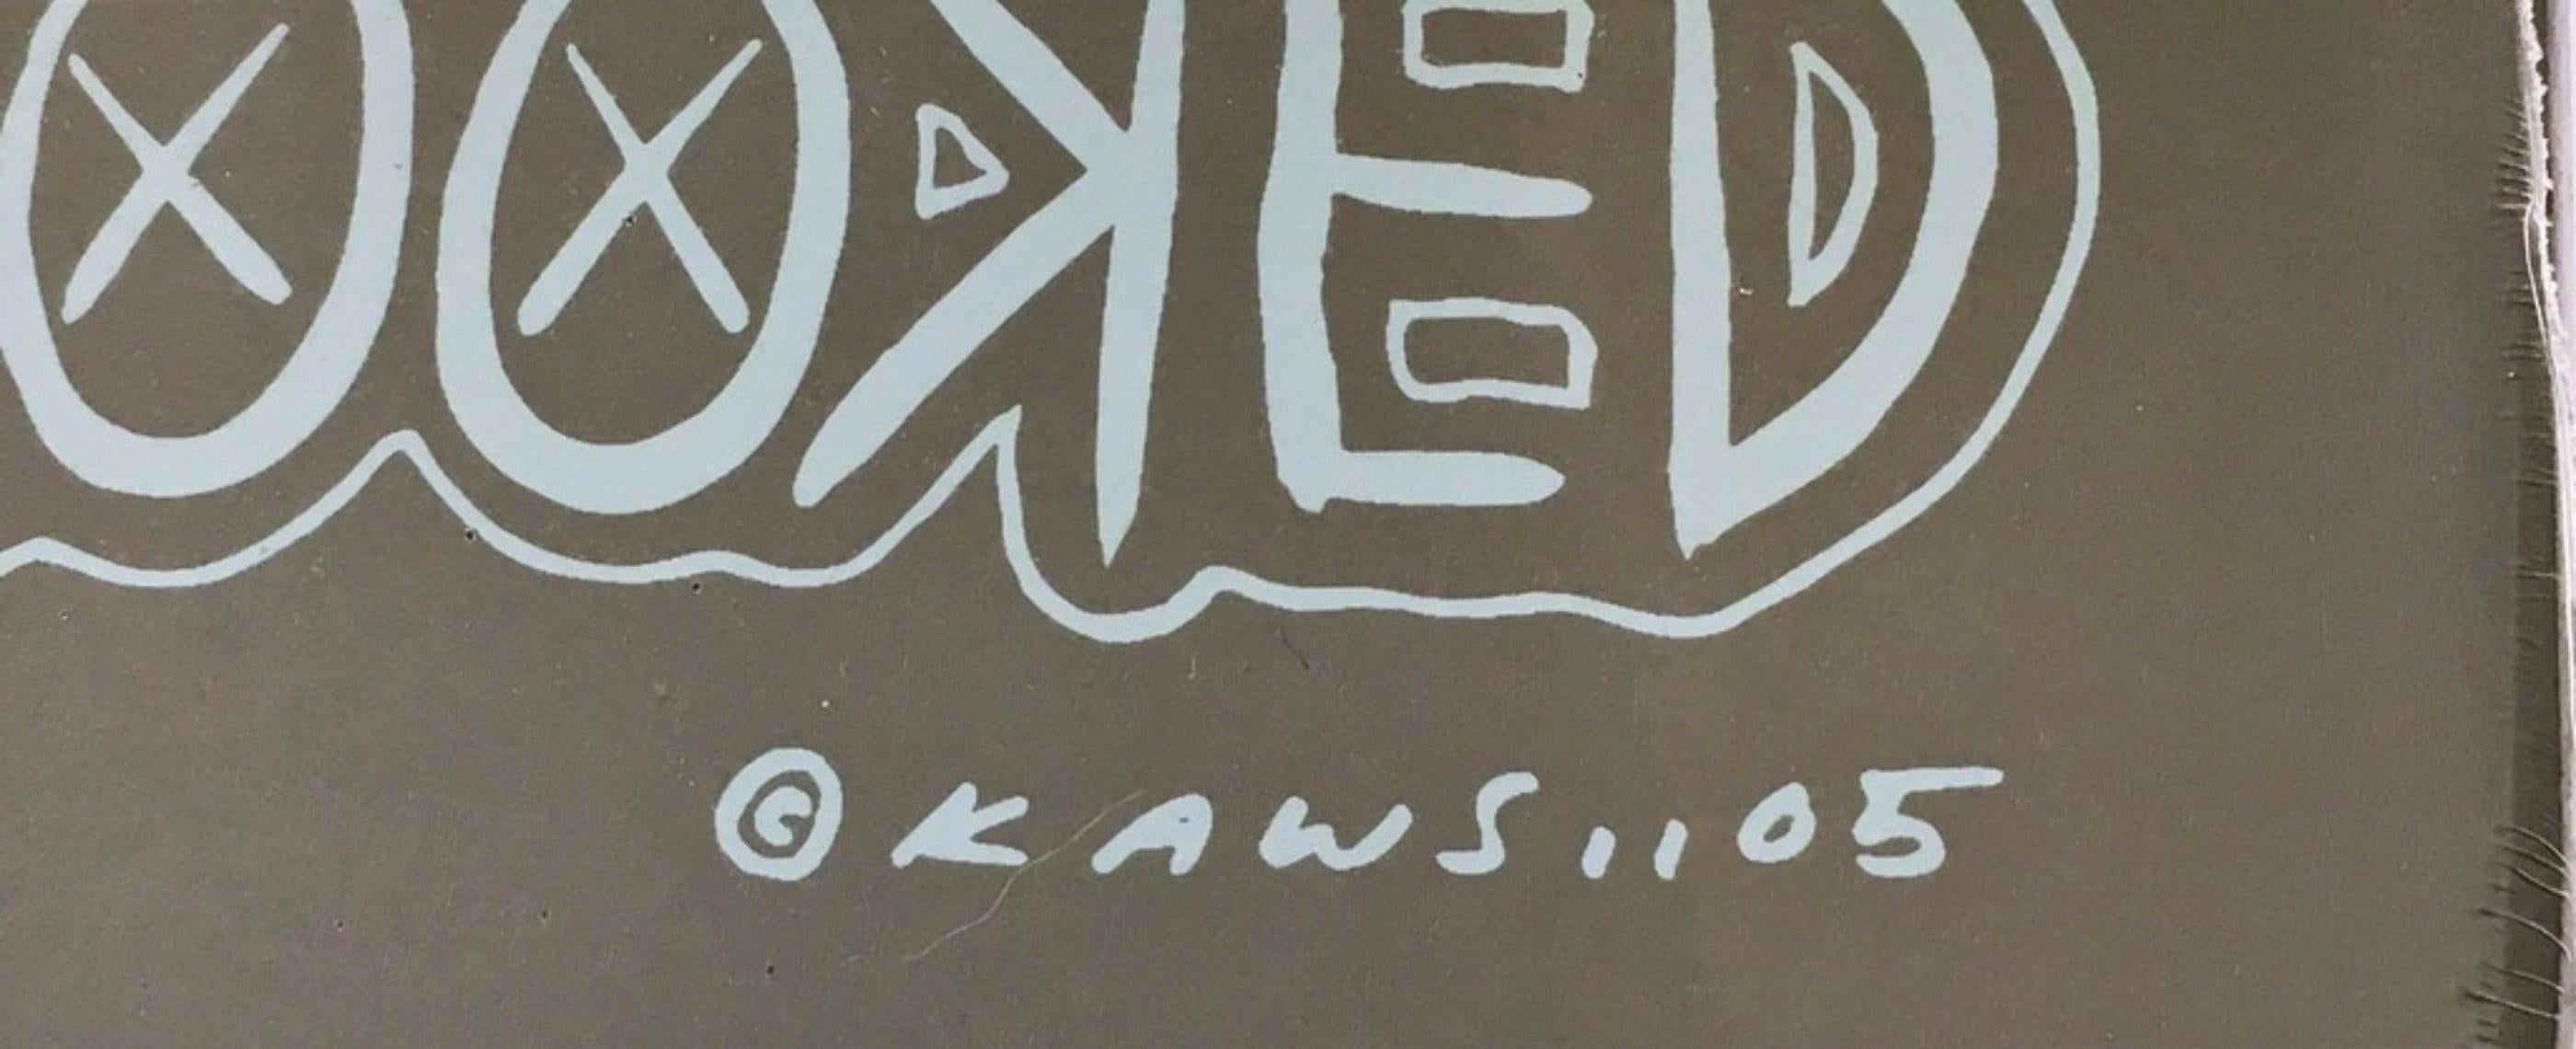 KAWS
Gelbe Schlange, 2005
Siebdruck auf 100% kanadischem 7-Ply Maplewood Skateboard
31 × 8 × 3/10 Zoll
Limitierte Auflage von 500 Stück (Skate-Deck ist handnummeriert 46/500)
Seltene limitierte Auflage eines frühen KAWS-Stücks aus dem Jahr 2005. 